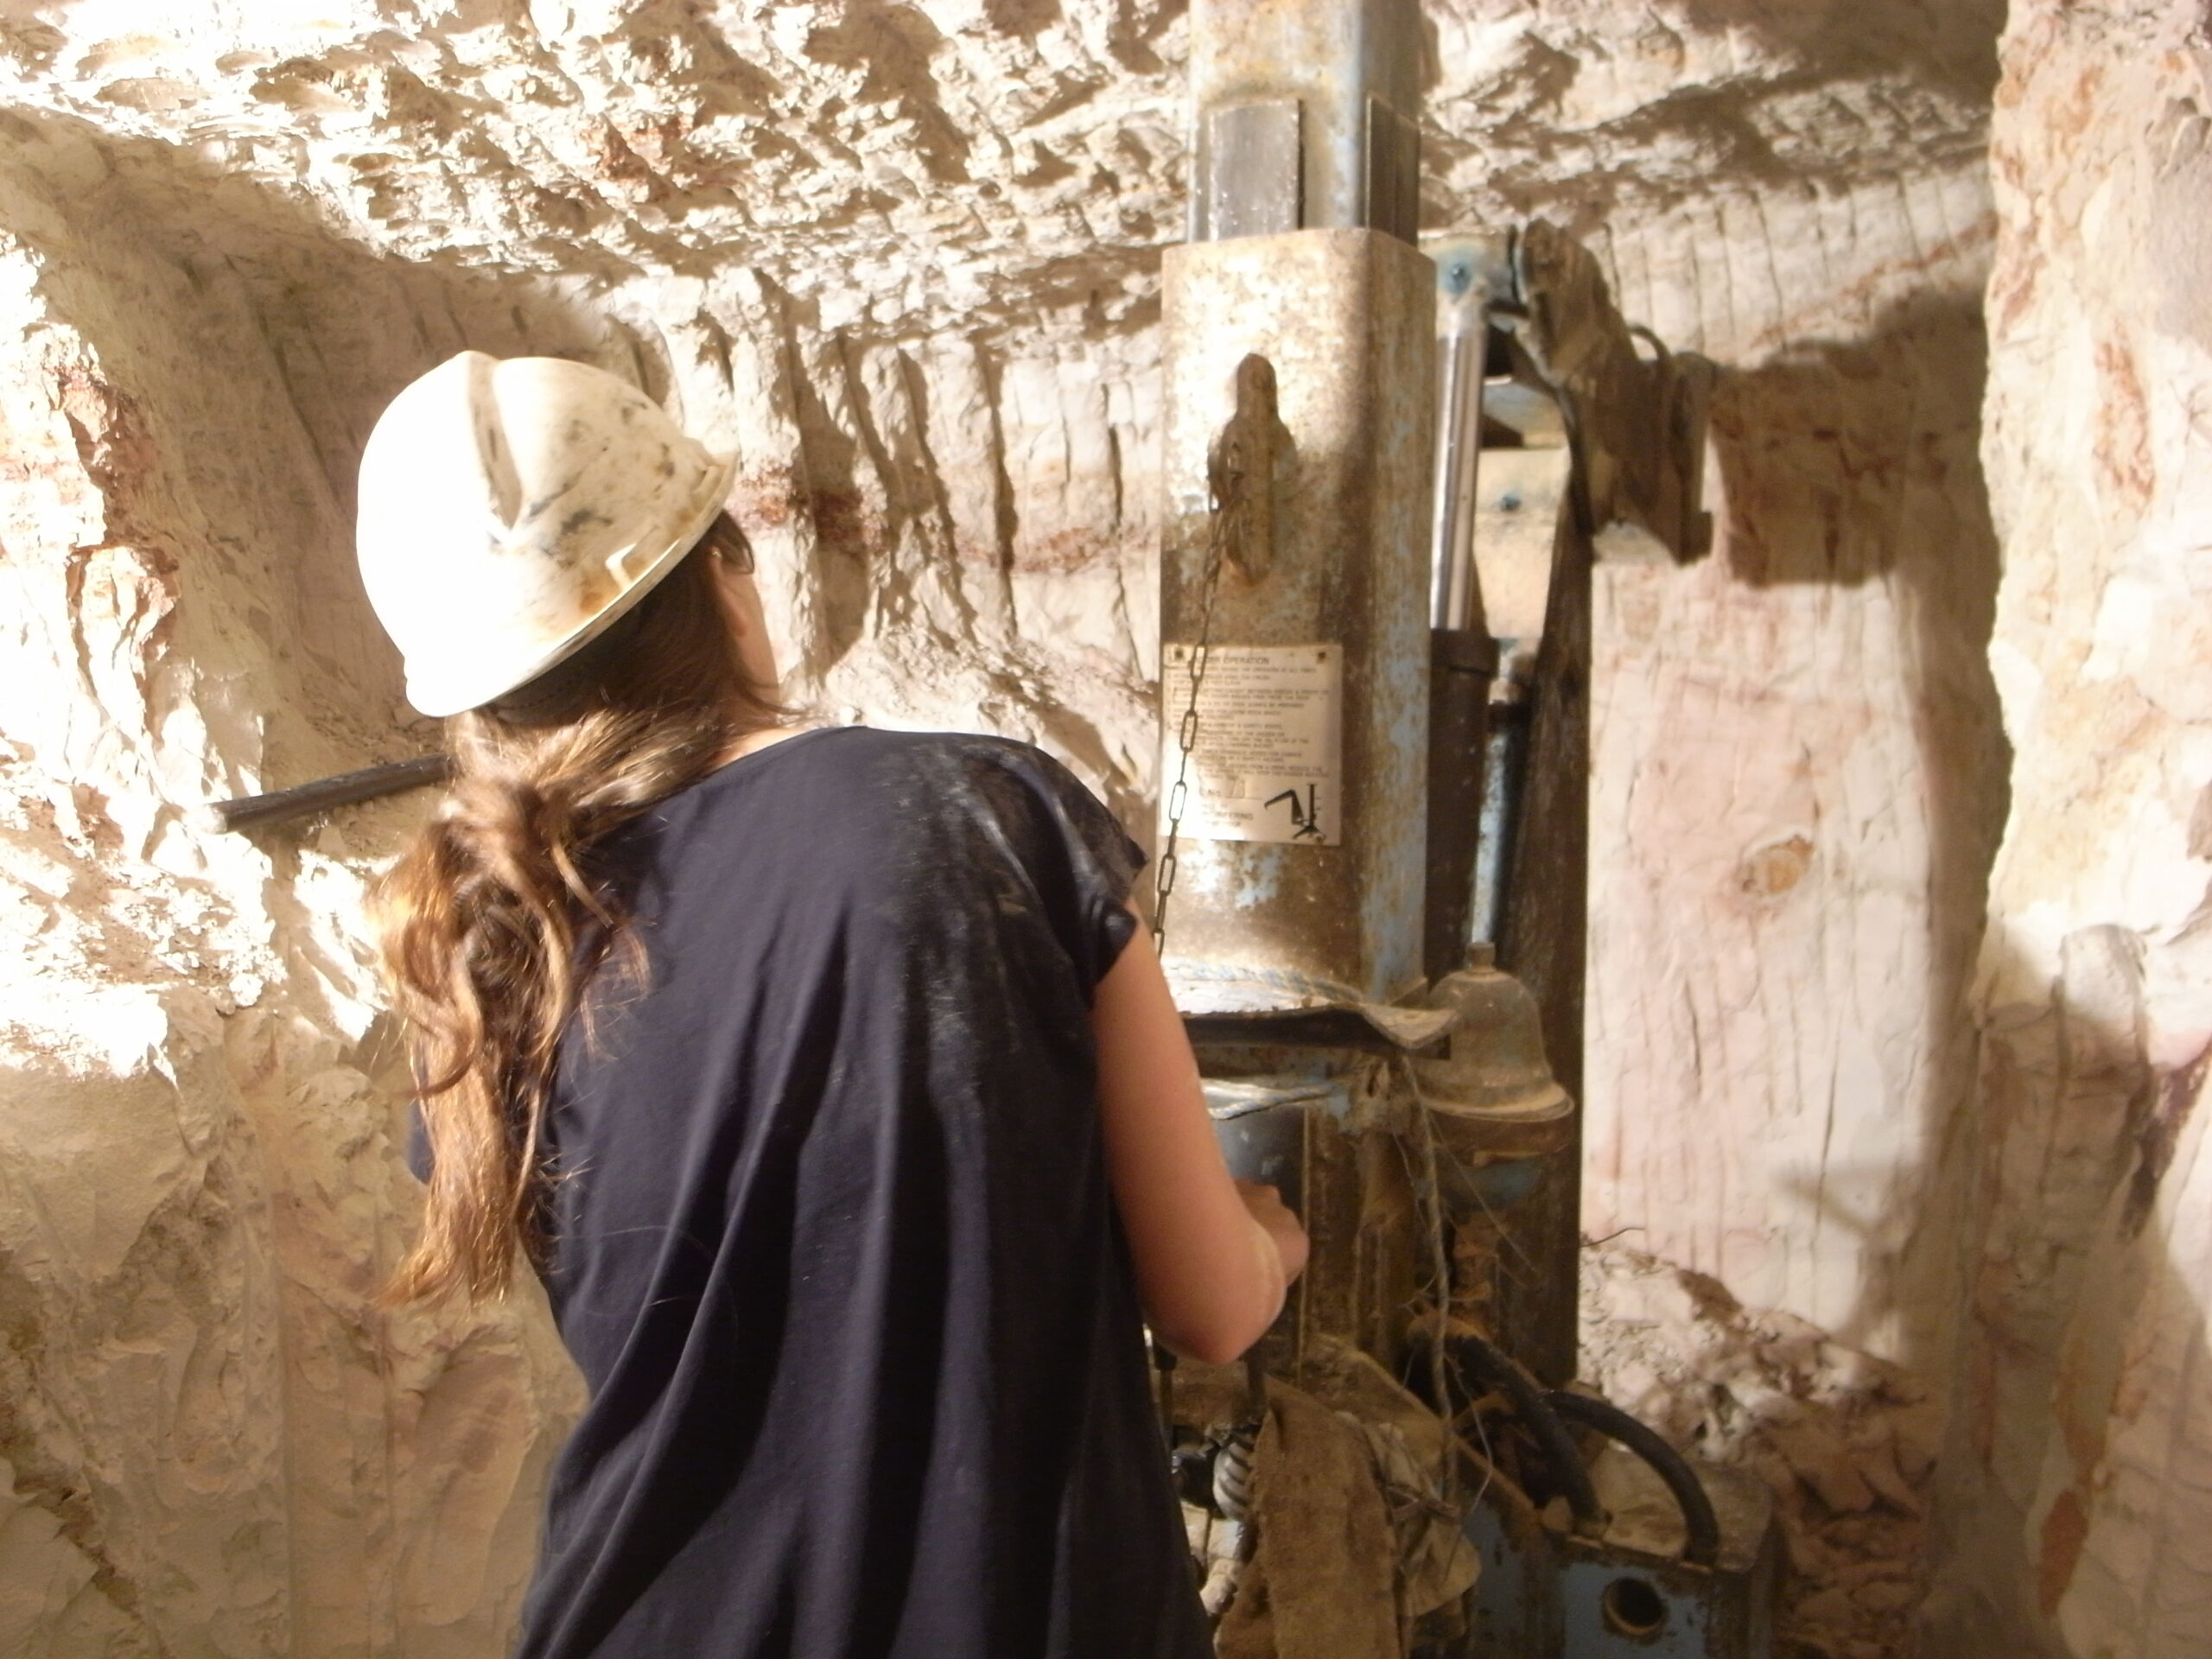 Auf Opalsuche. Verena Michel in einer Mine im australischen Outback. Foto: privat